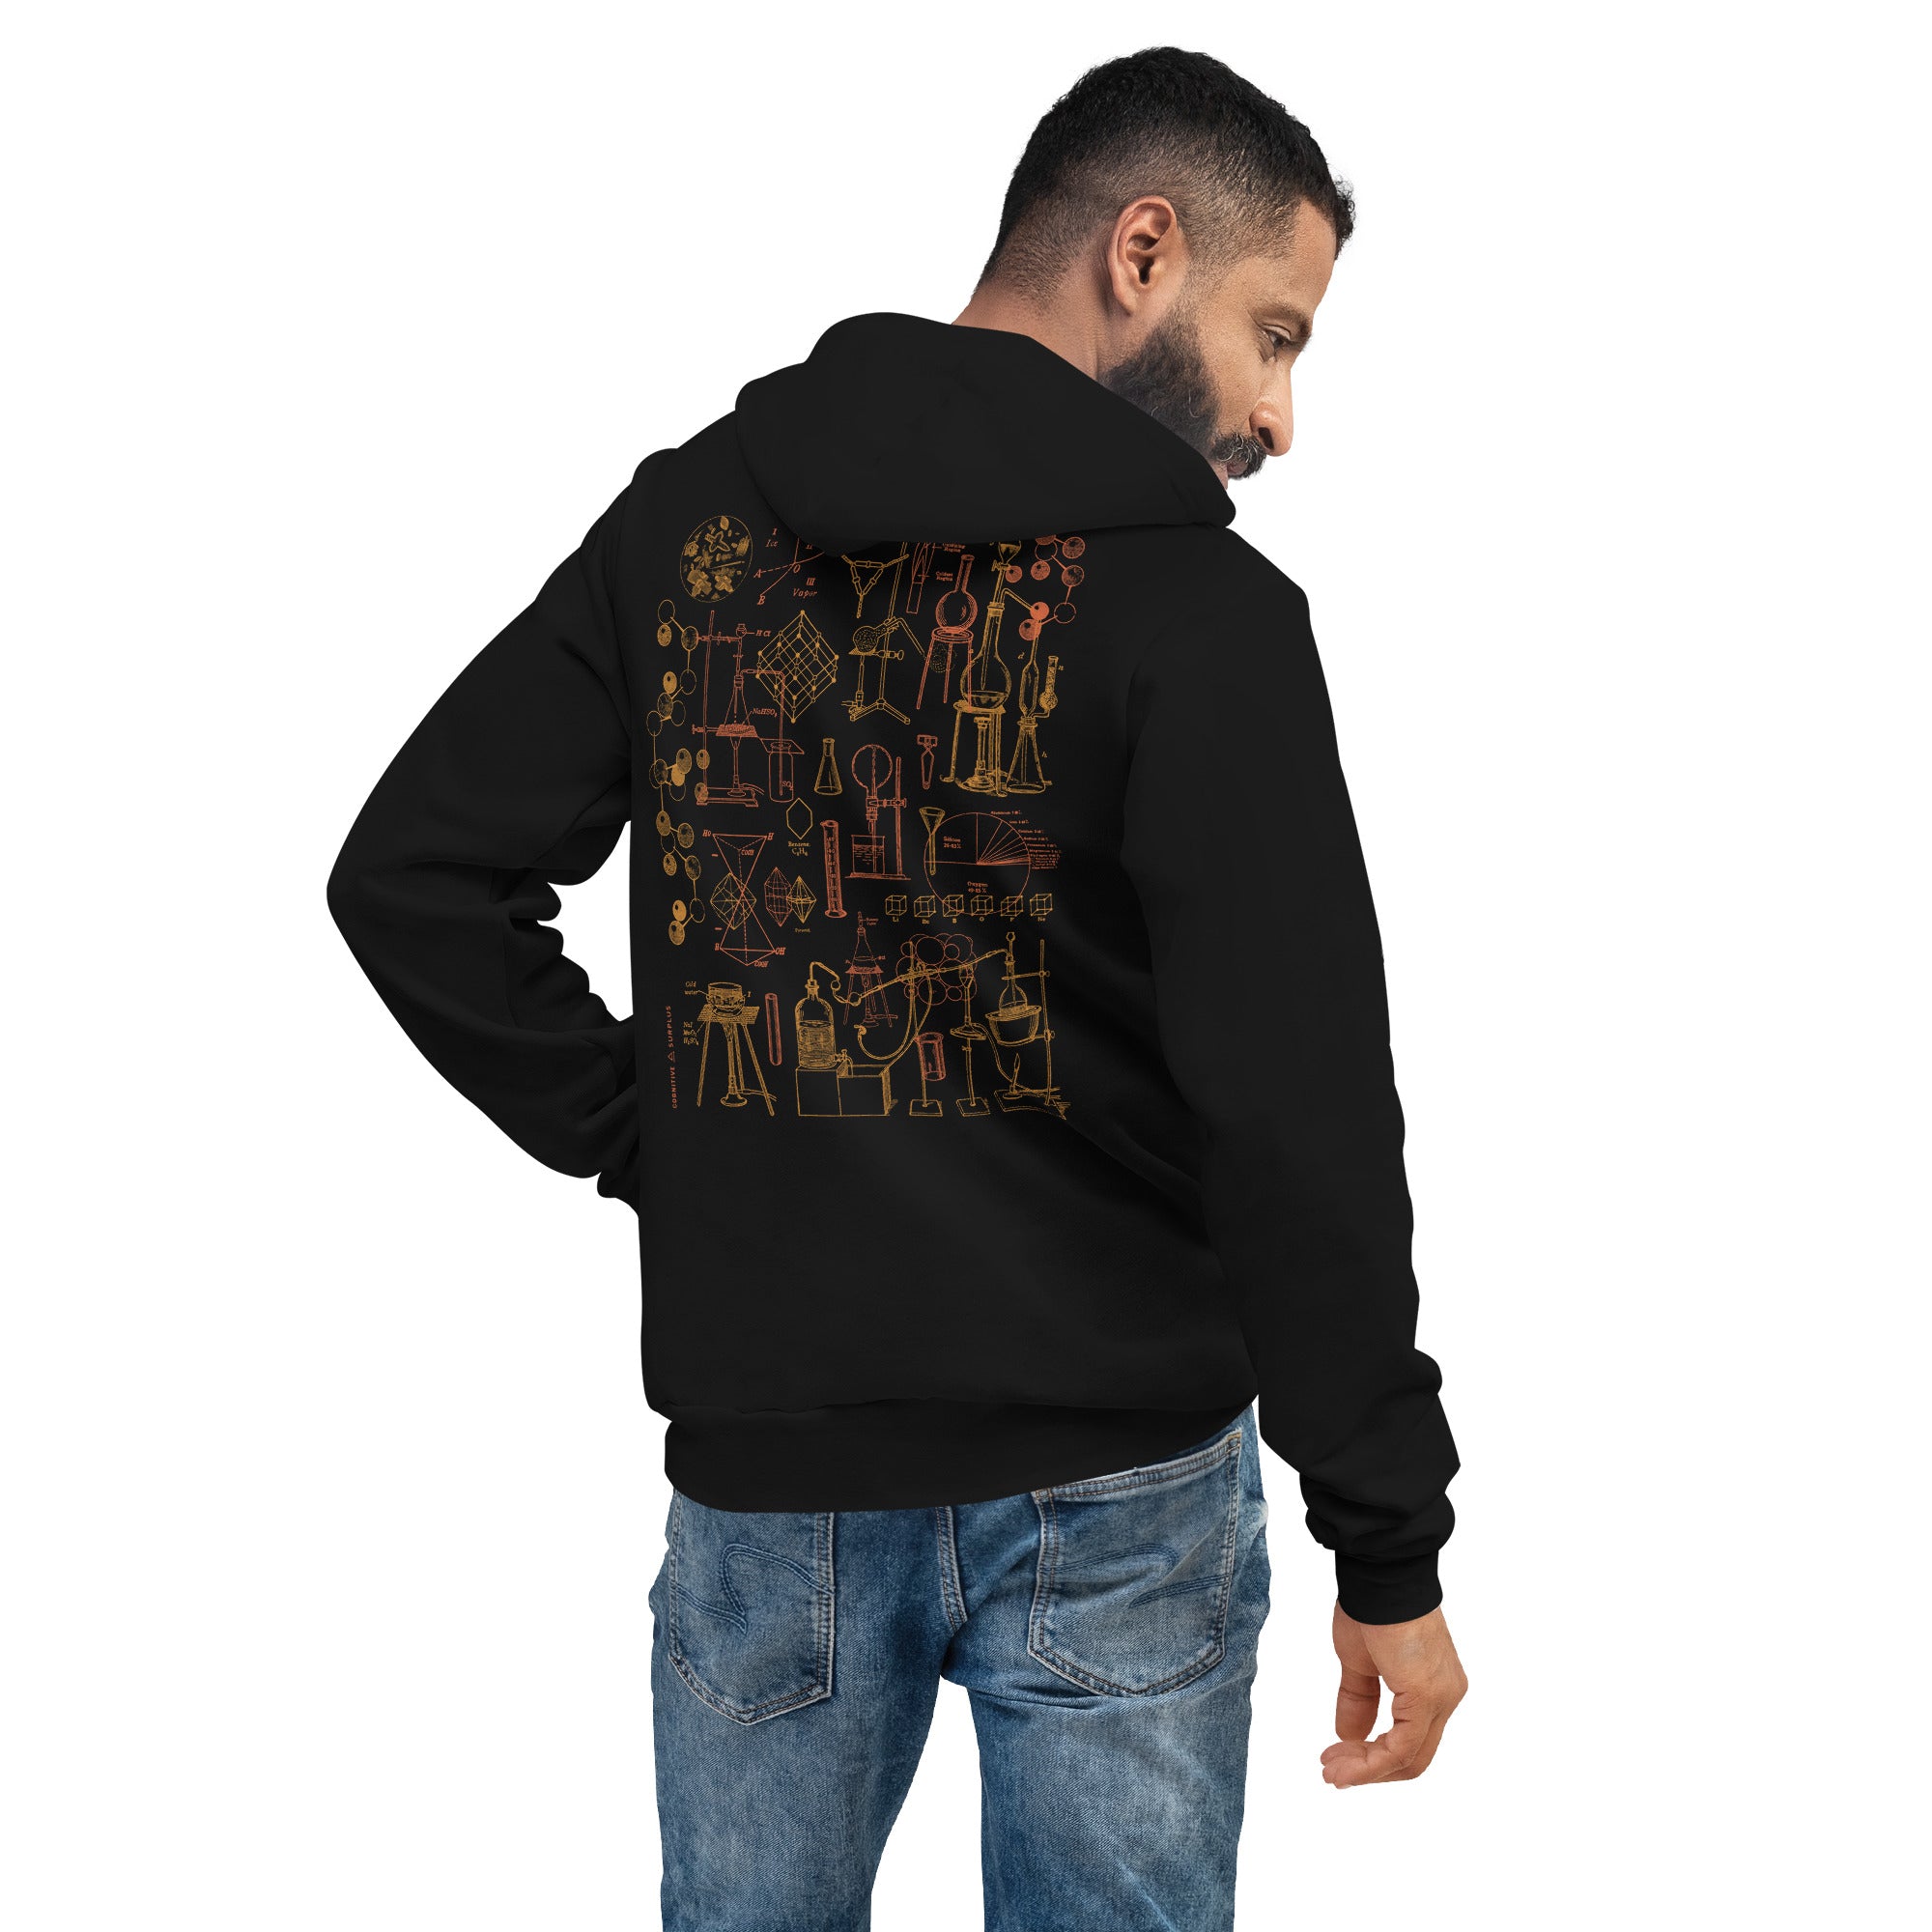 unisex-pullover-hoodie-black-back-656e659cd506b.jpg